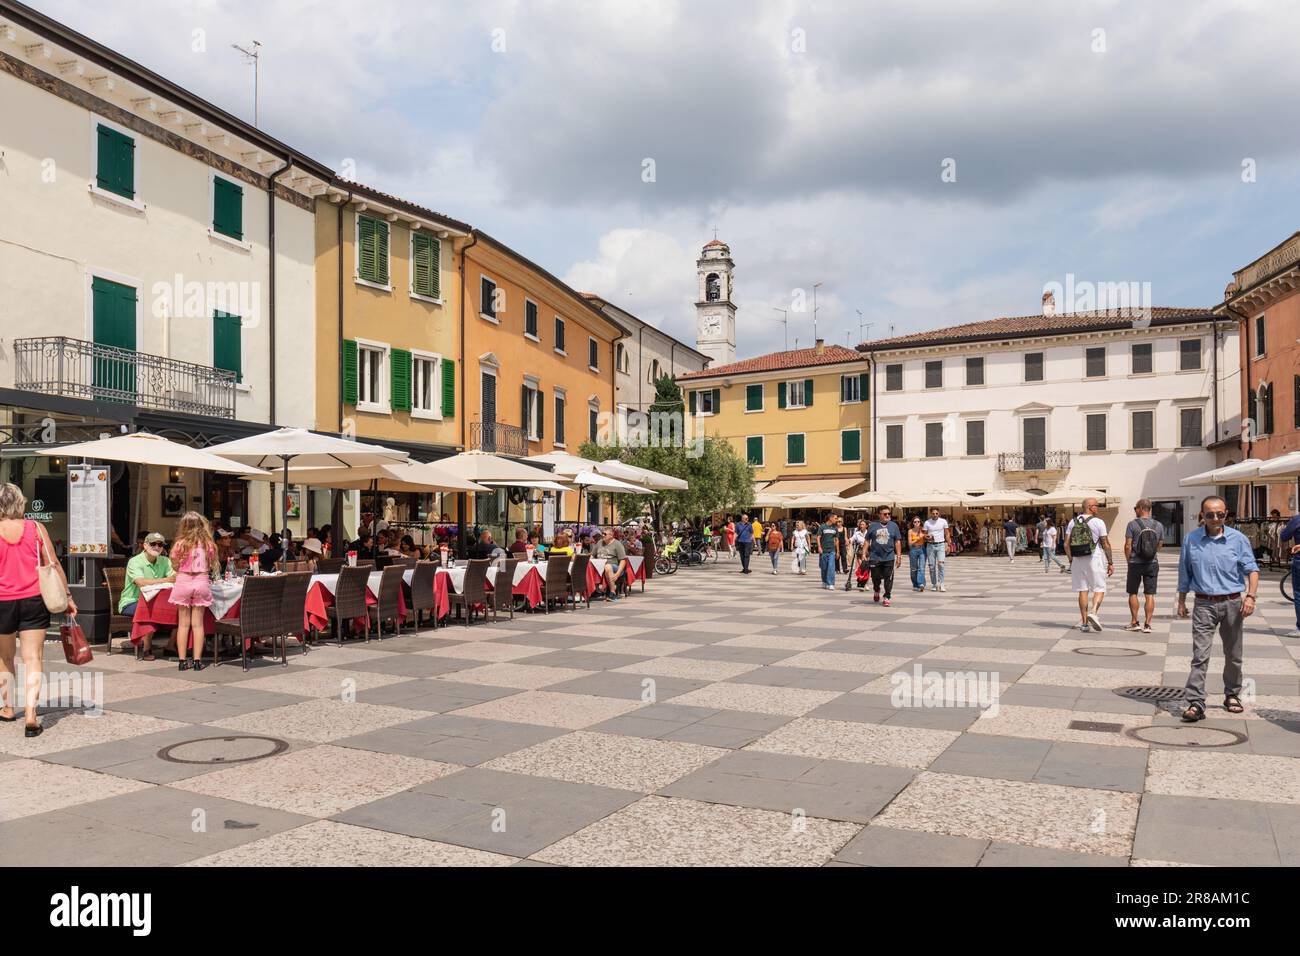 Une place pittoresque remplie de restaurants, cafés et boutiques dans la ville historique de Lazise, le lac de Garde, l'Italie, l'Europe Banque D'Images